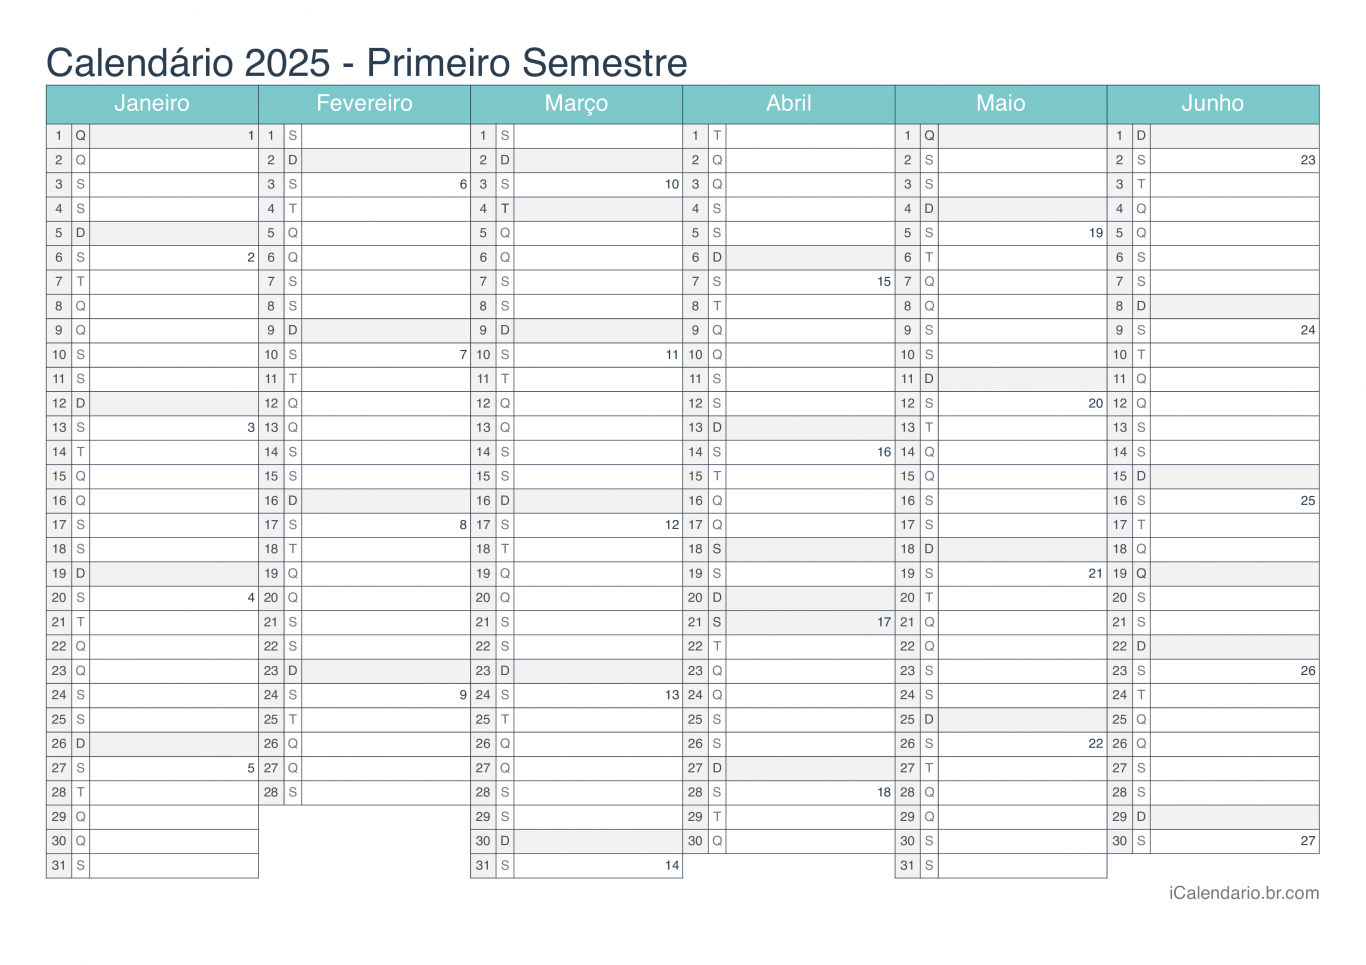 Calendário por semestre com números da semana 2025 - Turquesa